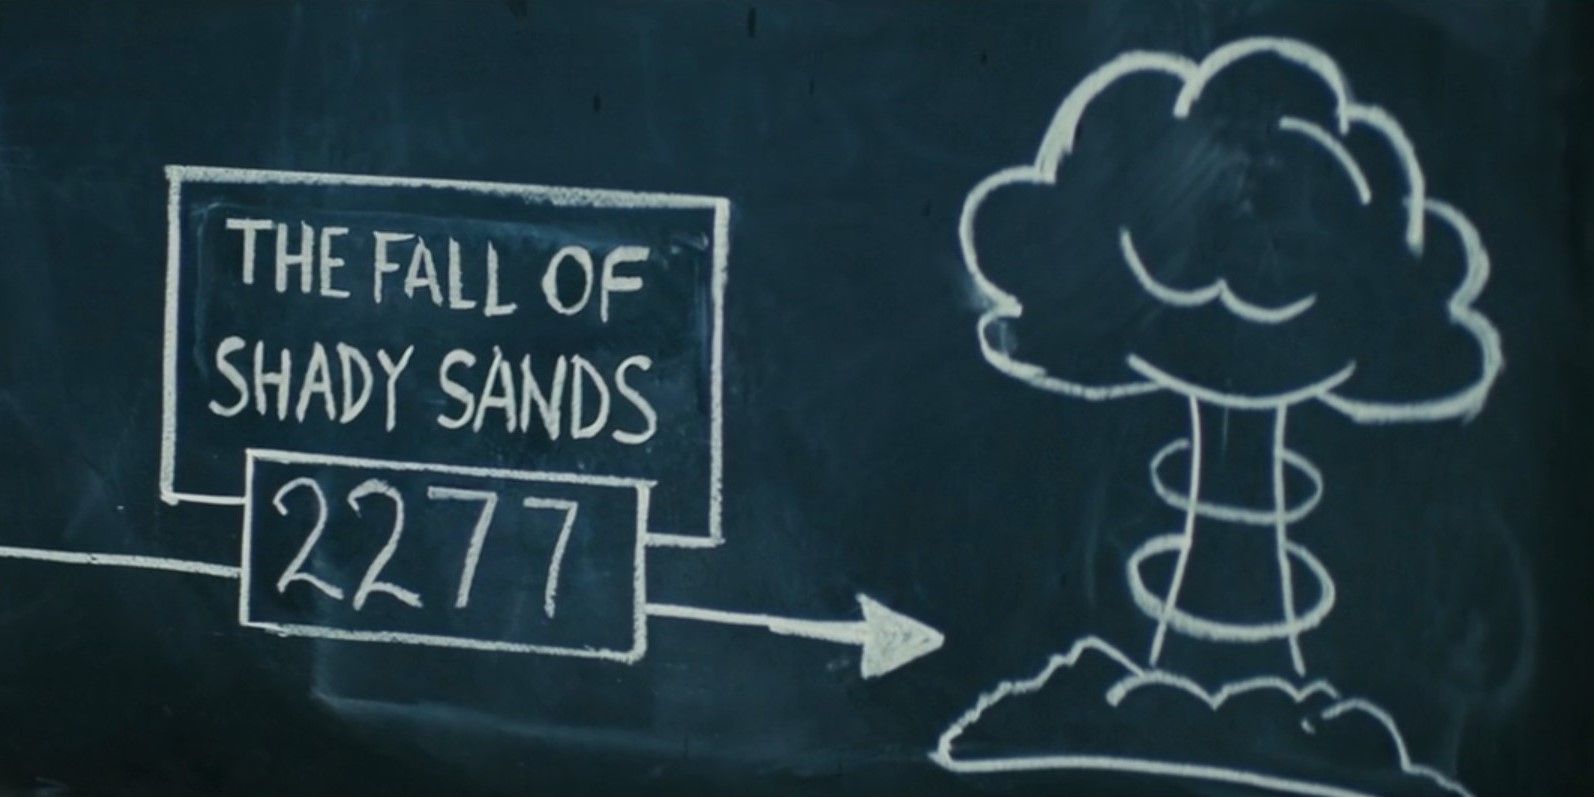 No quadro-negro está escrito "a queda das areias sombreadas 2277" ao lado da imagem de uma nuvem em forma de cogumelo no show Fallout